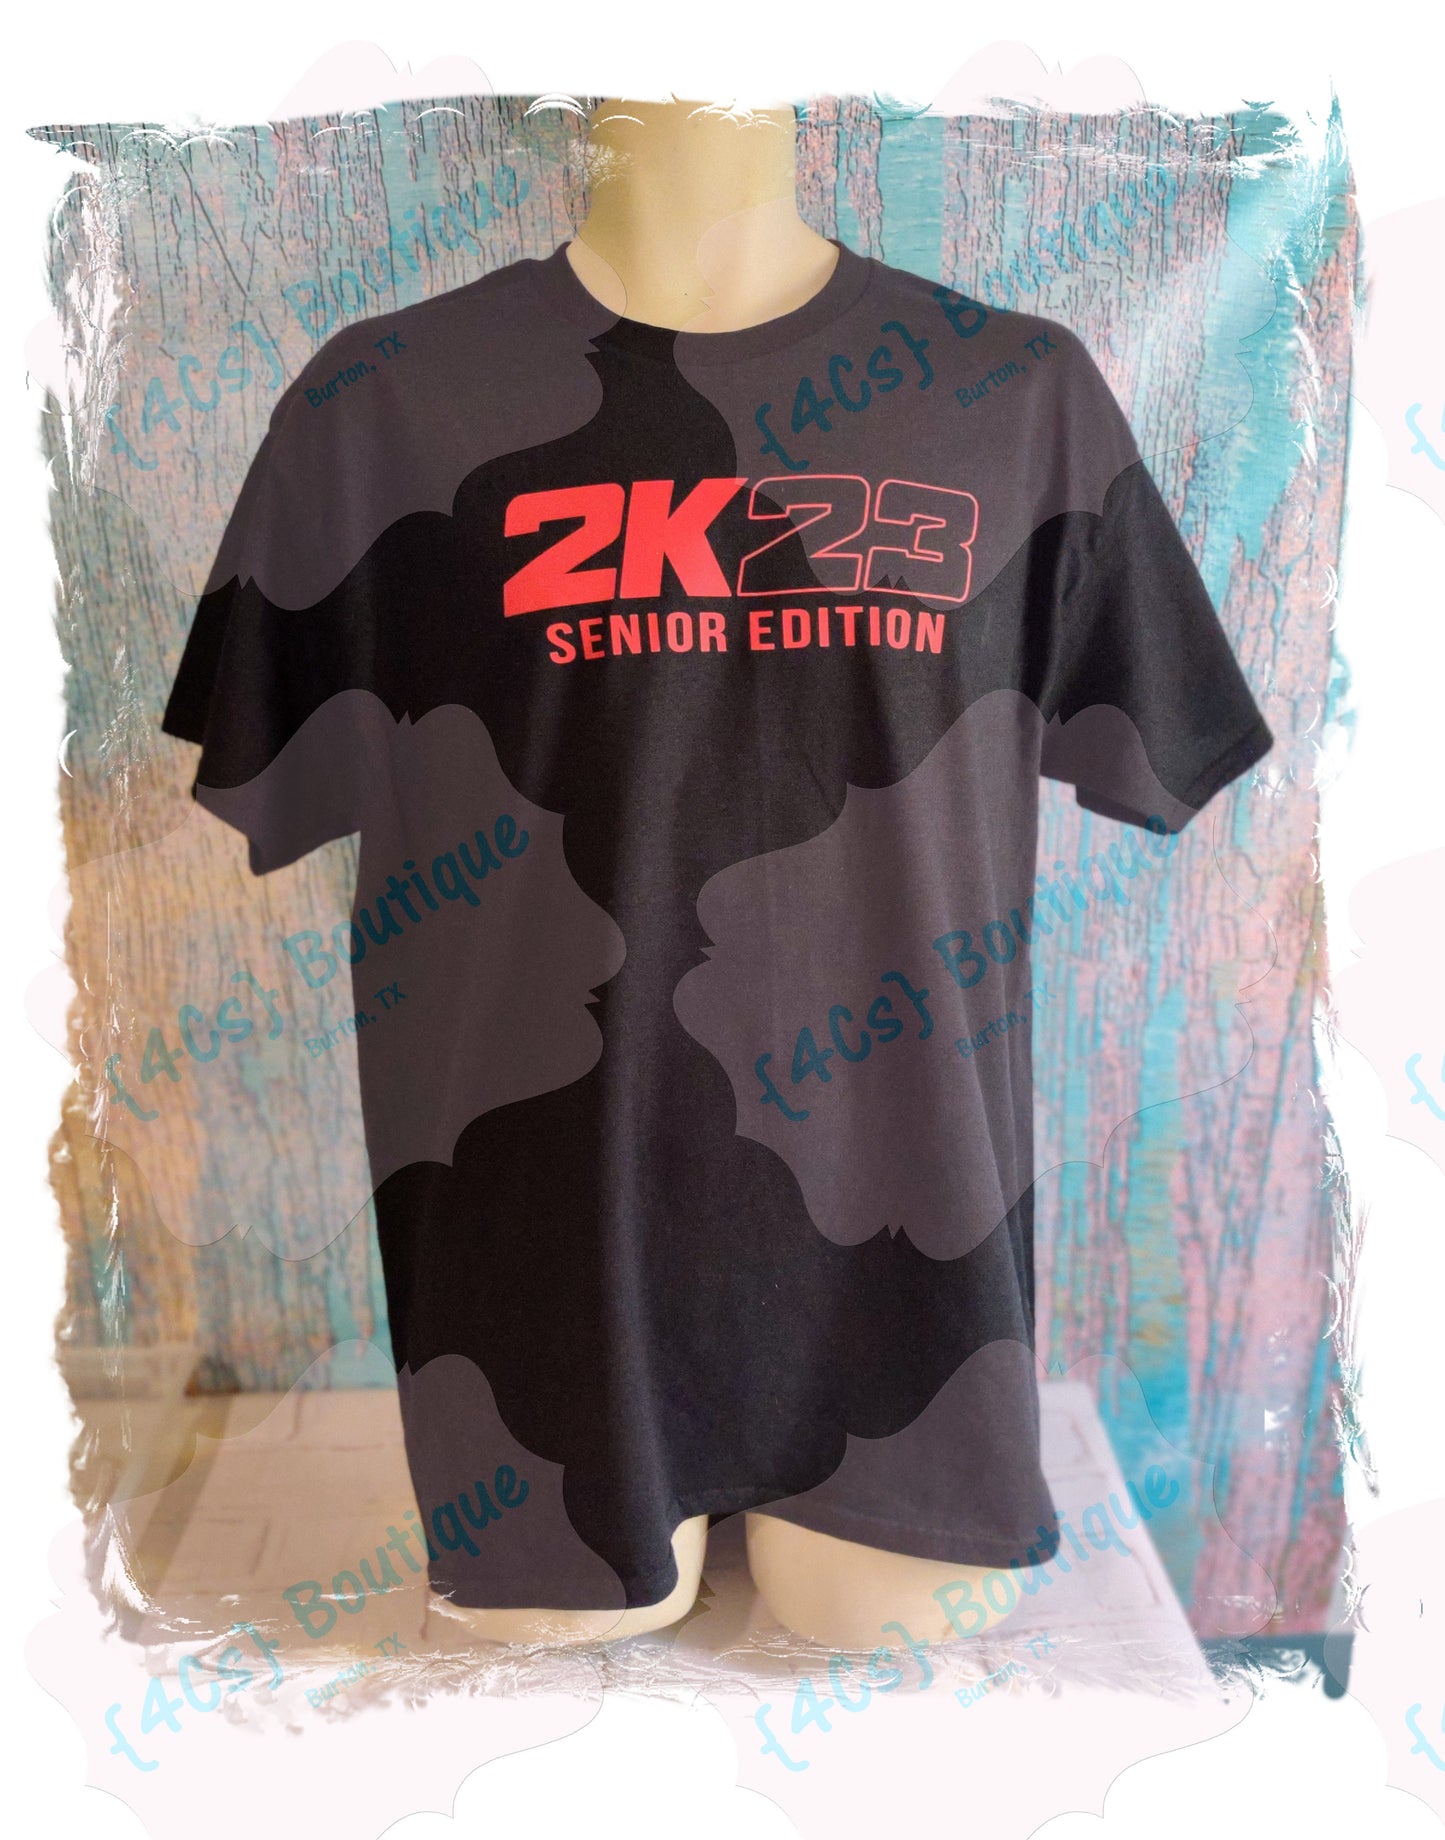 2K23 Senior Edition Shirt